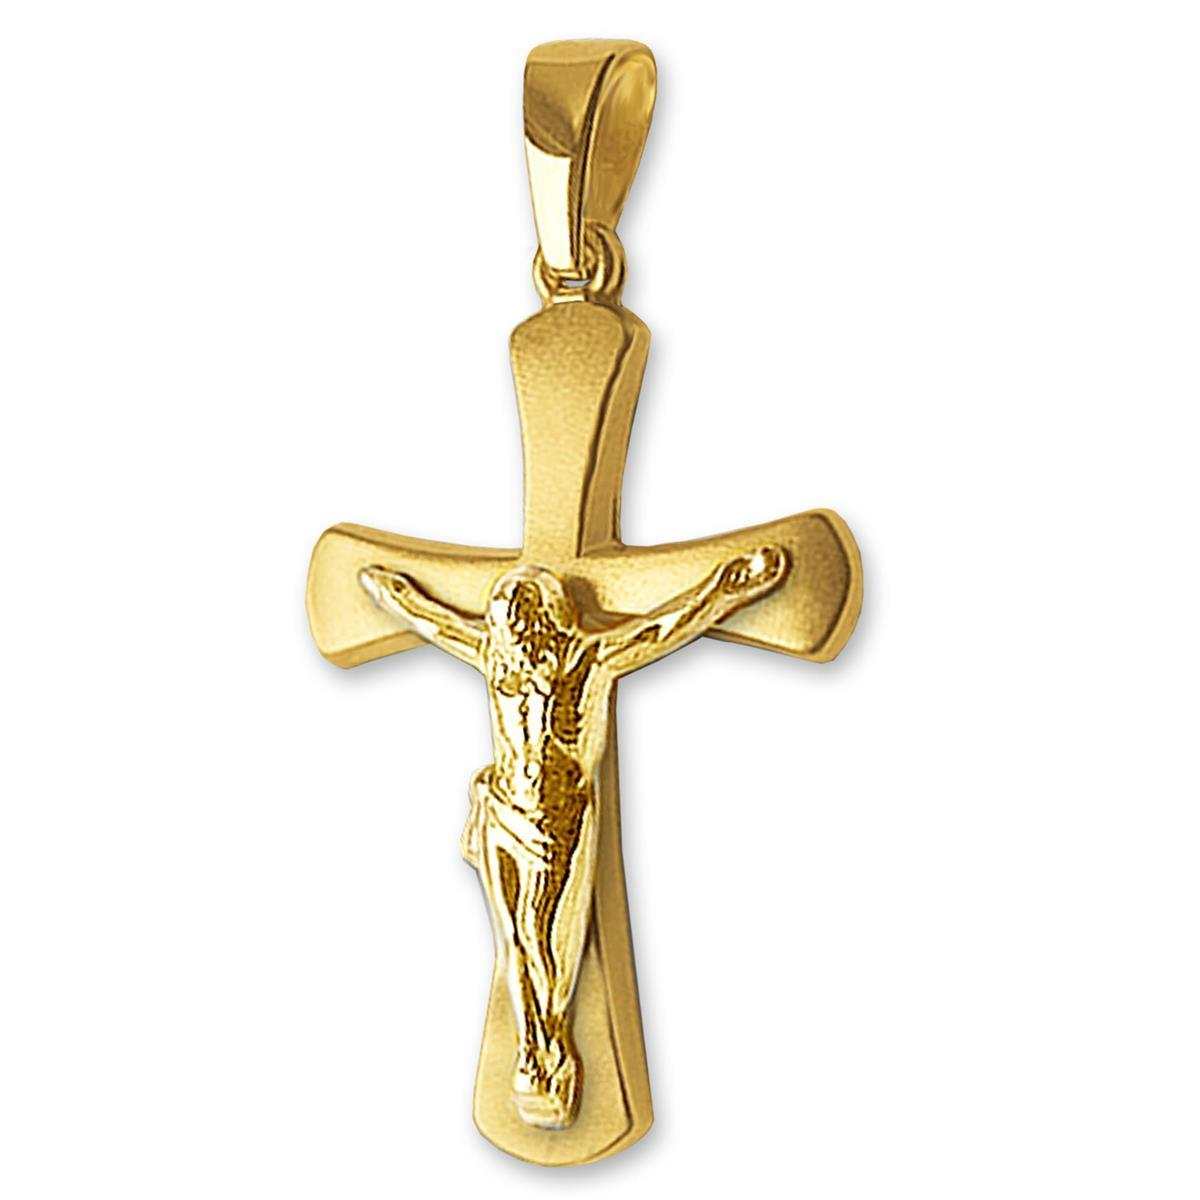 Goldener Anhänger Jesus Kreuz 21 mm matt und glänzend, nach außen breiter werdend 333 Gold 8 Karat